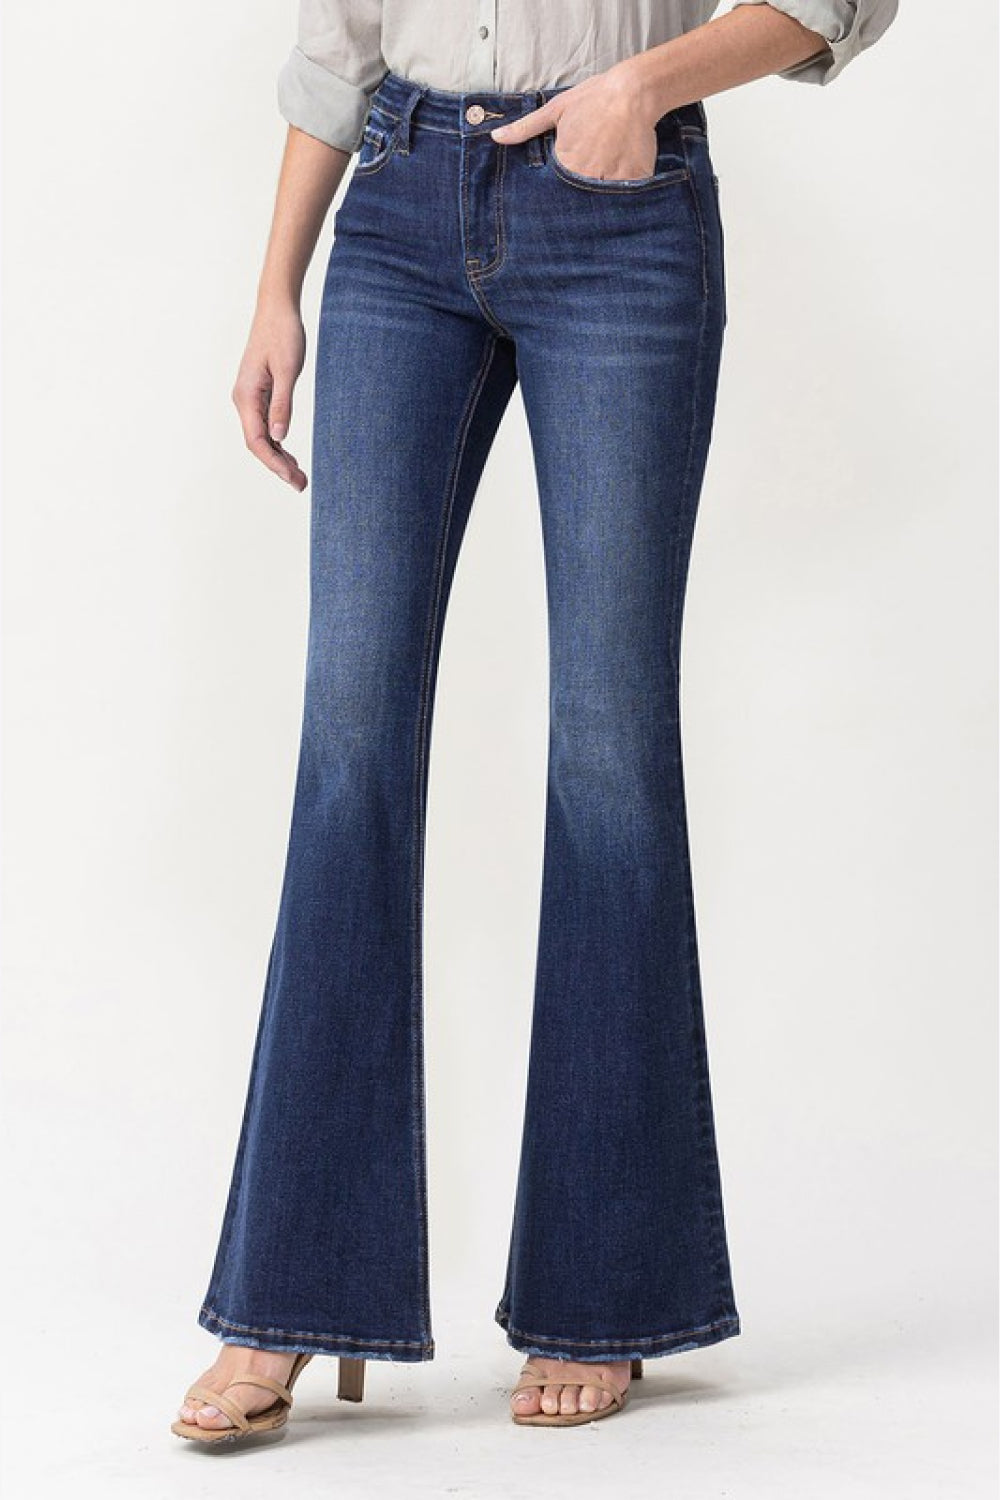 Lovervet by VERVET Full Size Joanna Midrise Flare Jeans